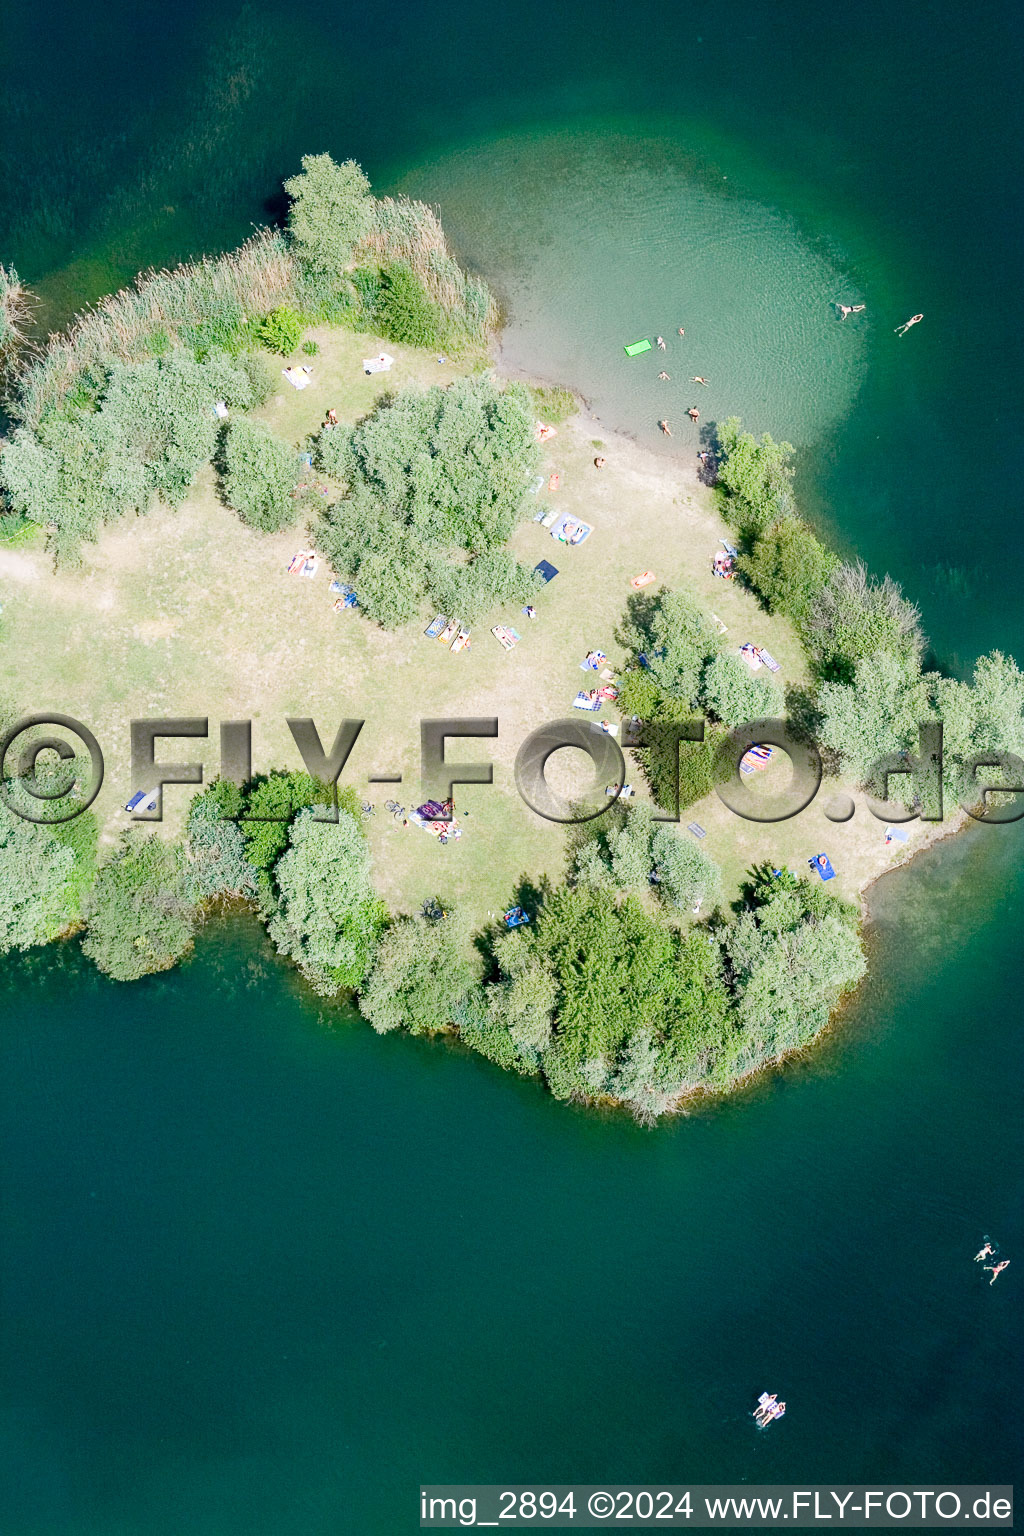 Vue aérienne de Baigneurs sur la plage de la presqu'île du lac de baignade Johanneswiese dans la zone de loisirs locale Johanneswiese à Jockgrim dans le département Rhénanie-Palatinat, Allemagne